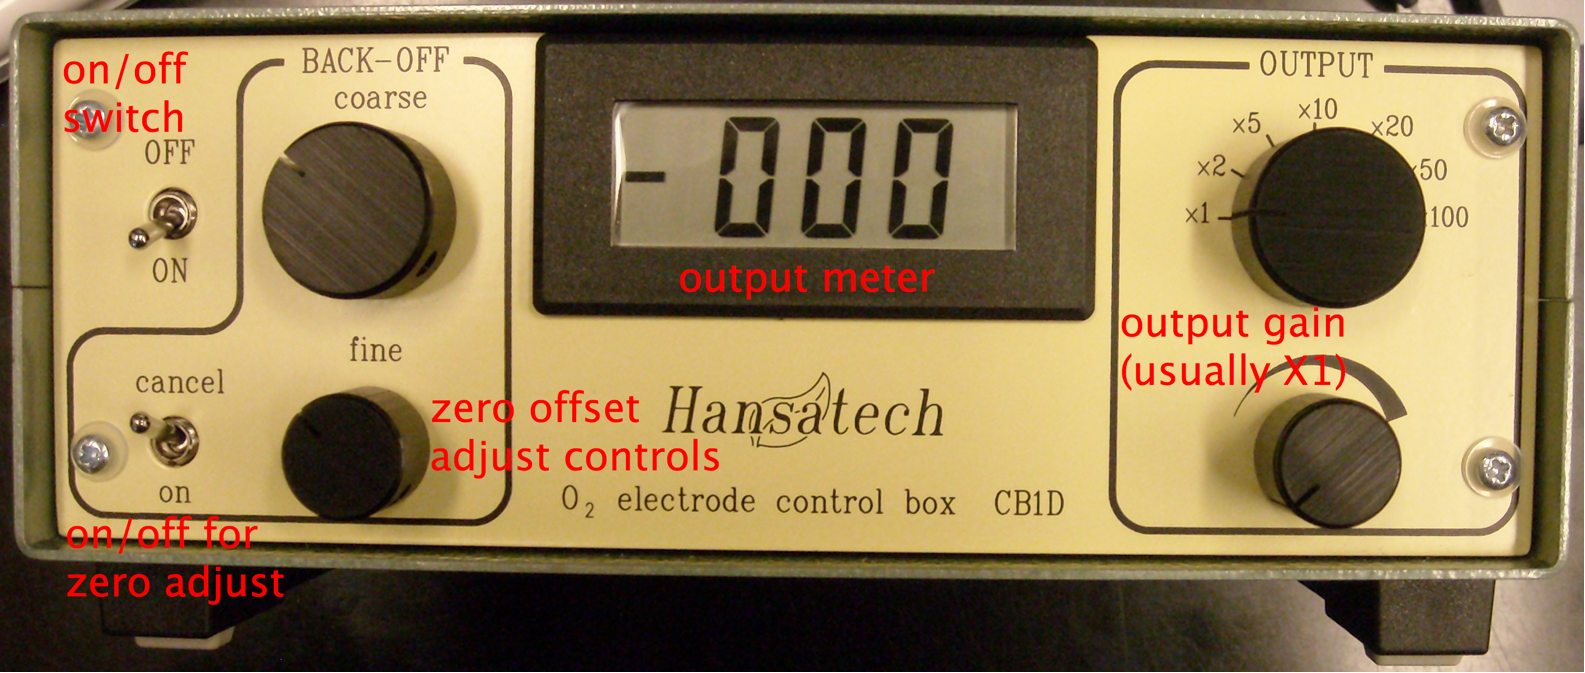 Hansatech control unit